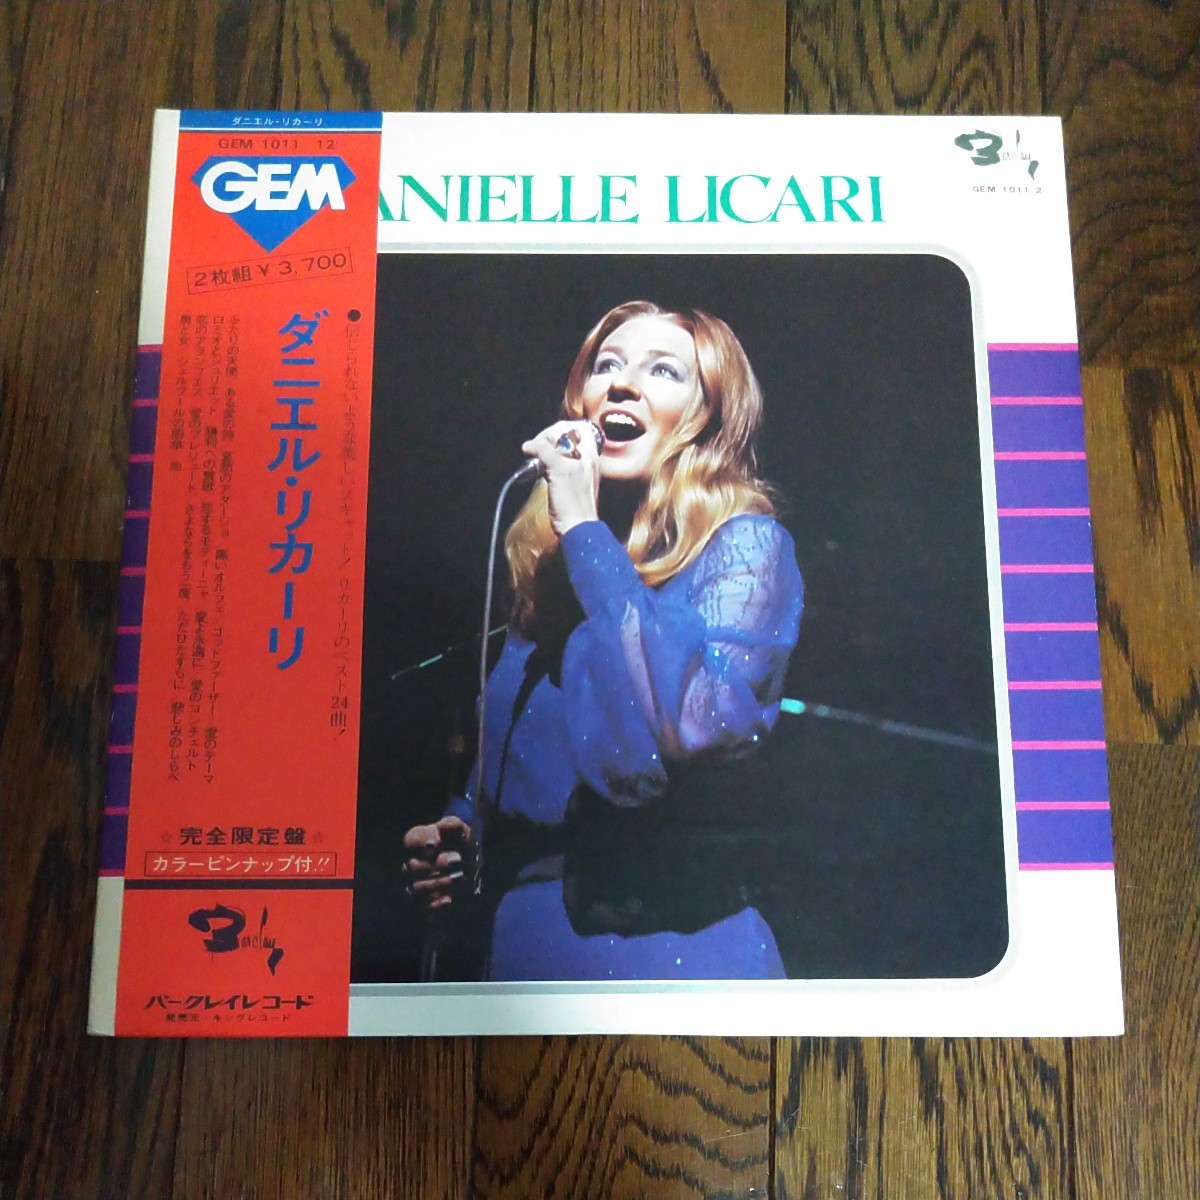 レア LP レコード Gem ダニエルリカーリ 完全限定盤 DANIELLE LICARIの画像1